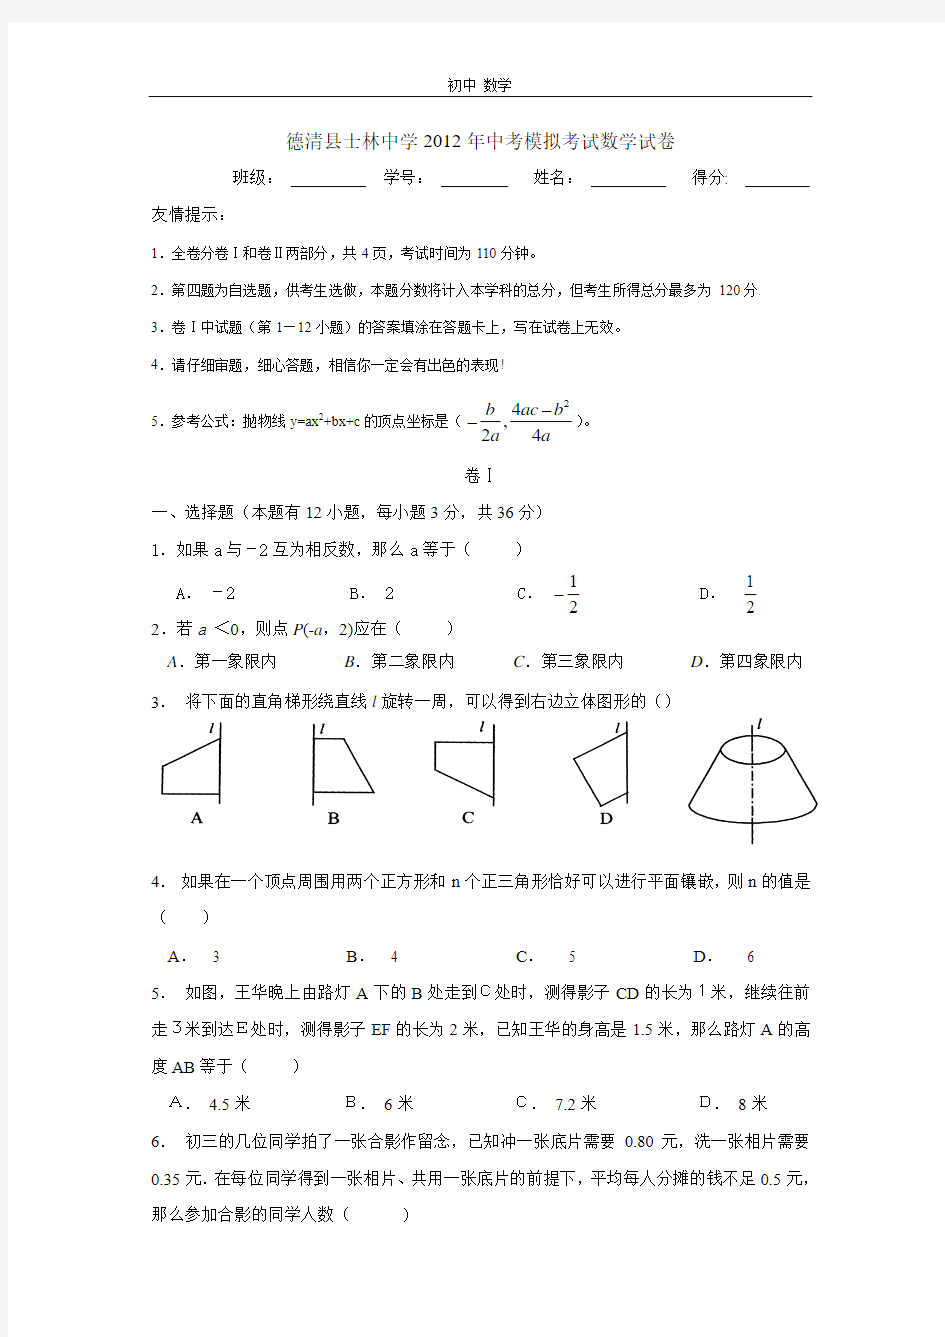 珍藏德清县士林中学2012年中考模拟考试数学试卷